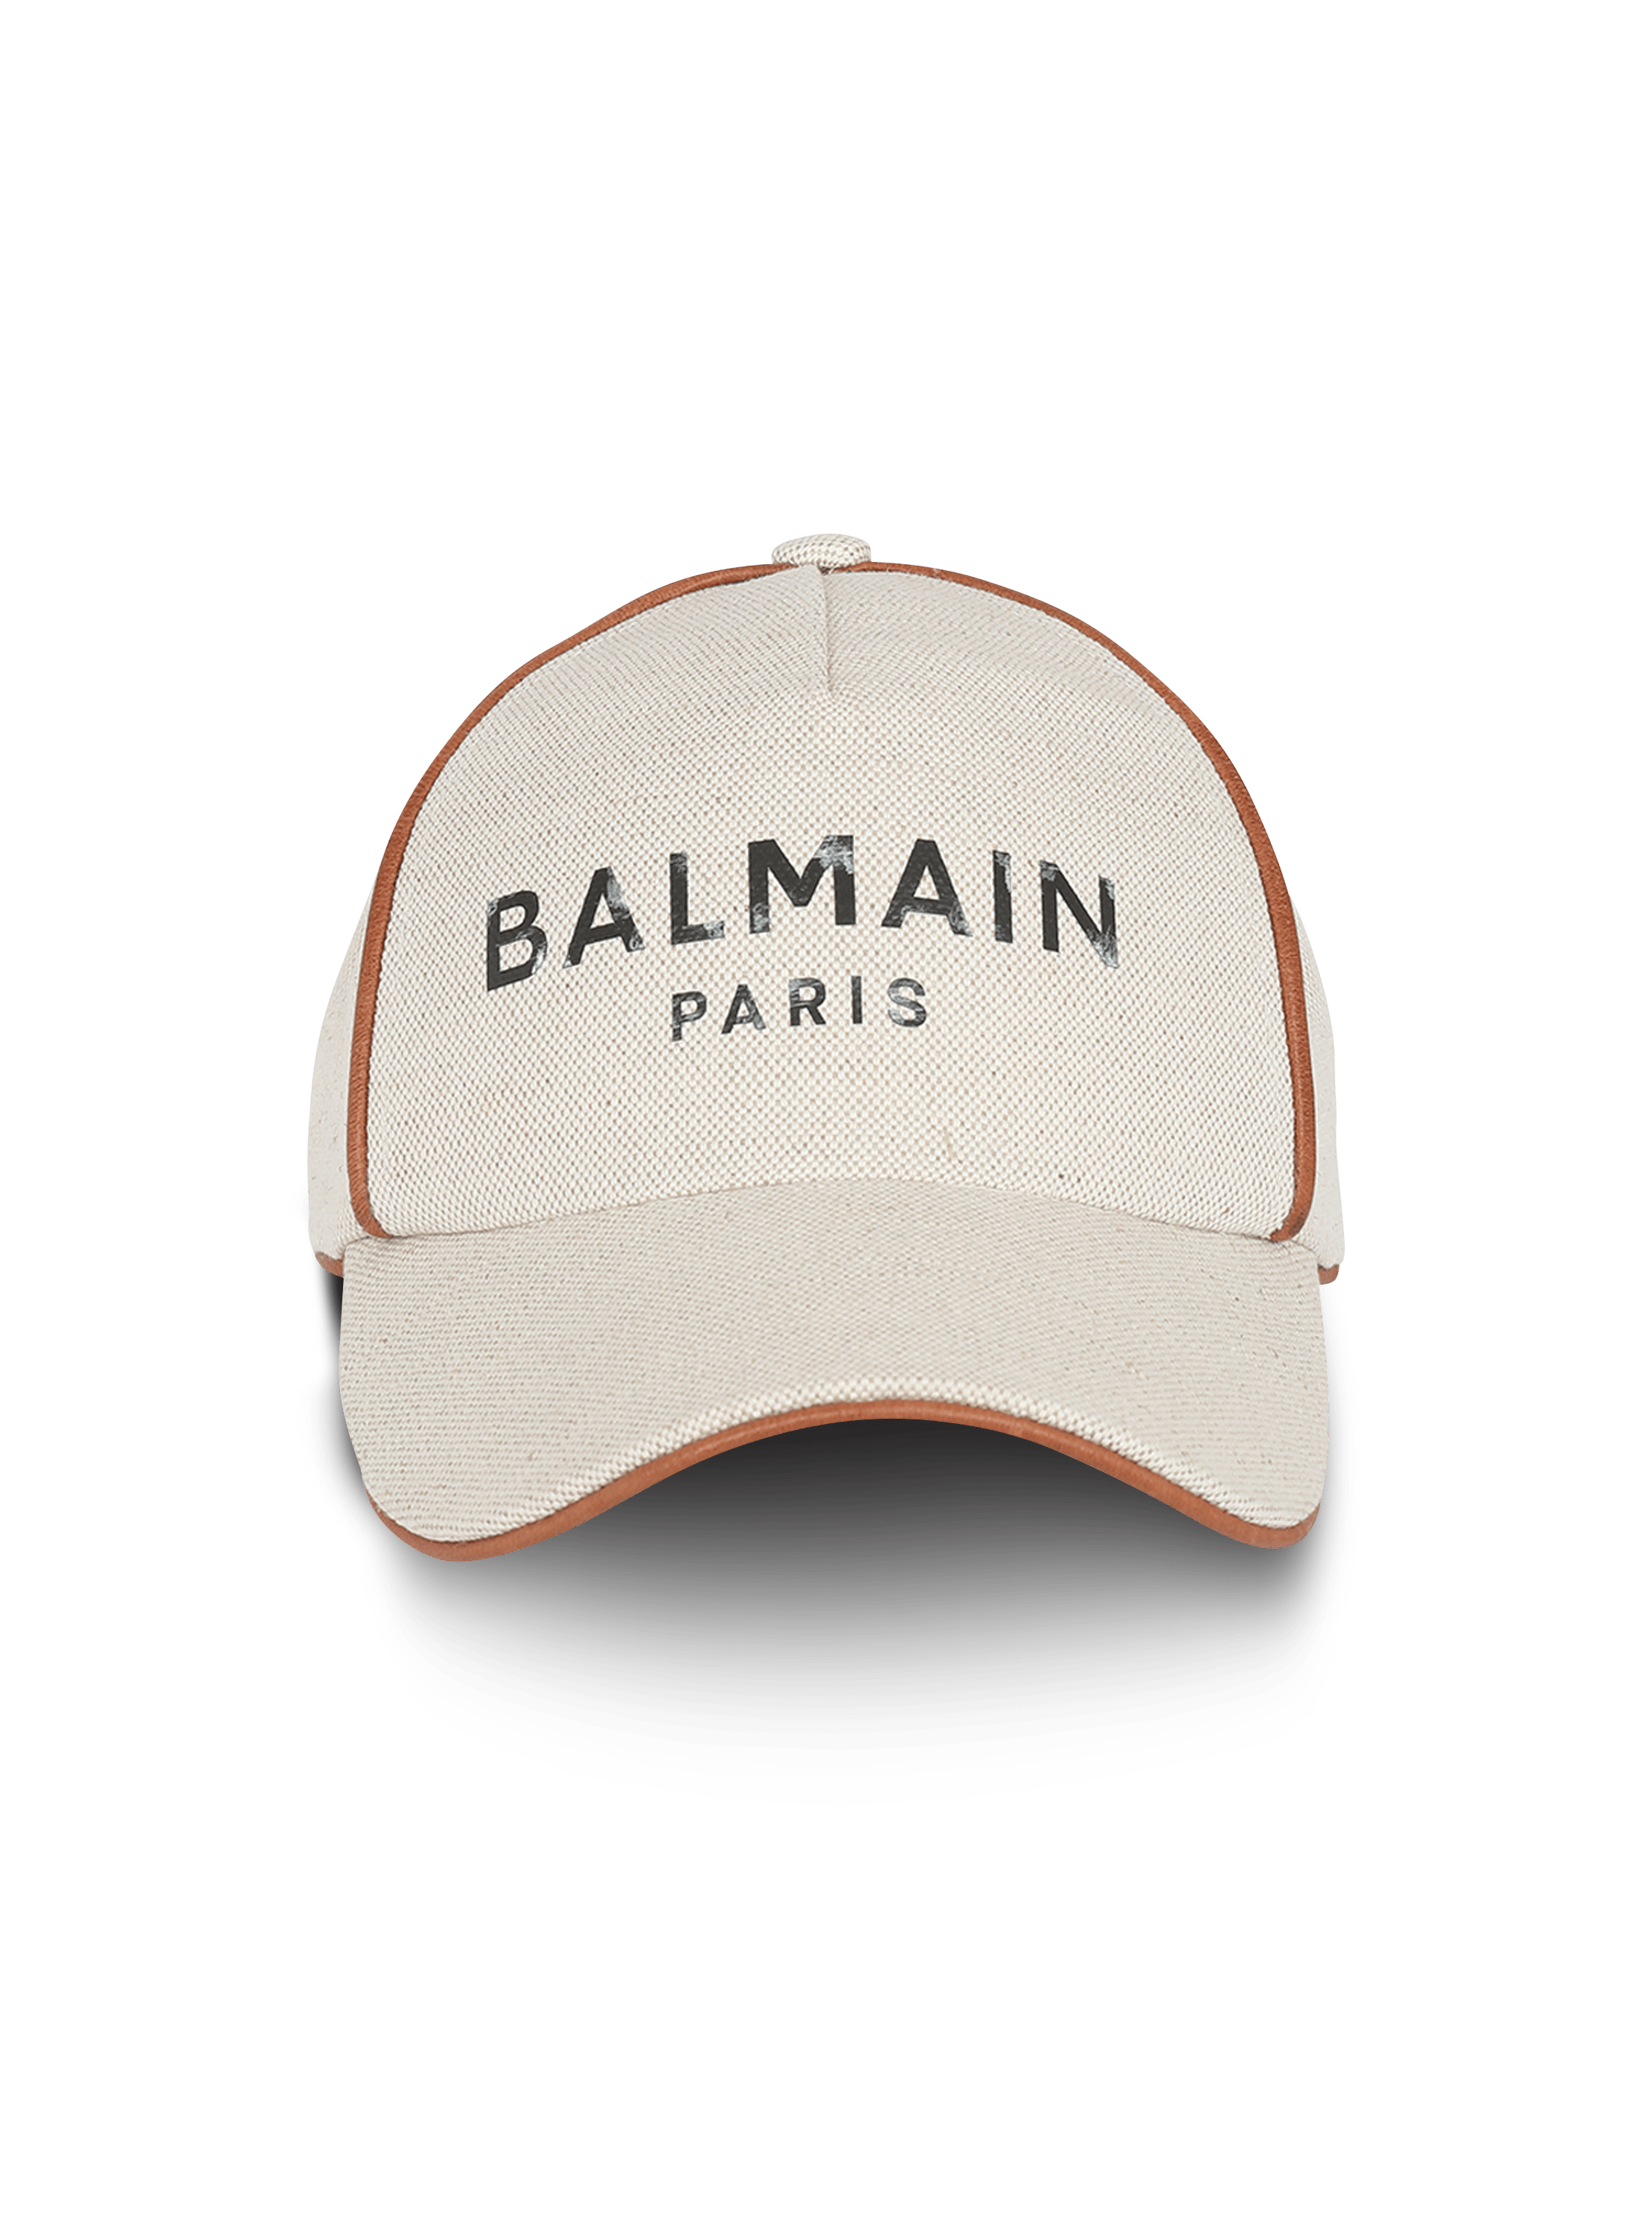 Cotton B-Army cap with Balmain logo